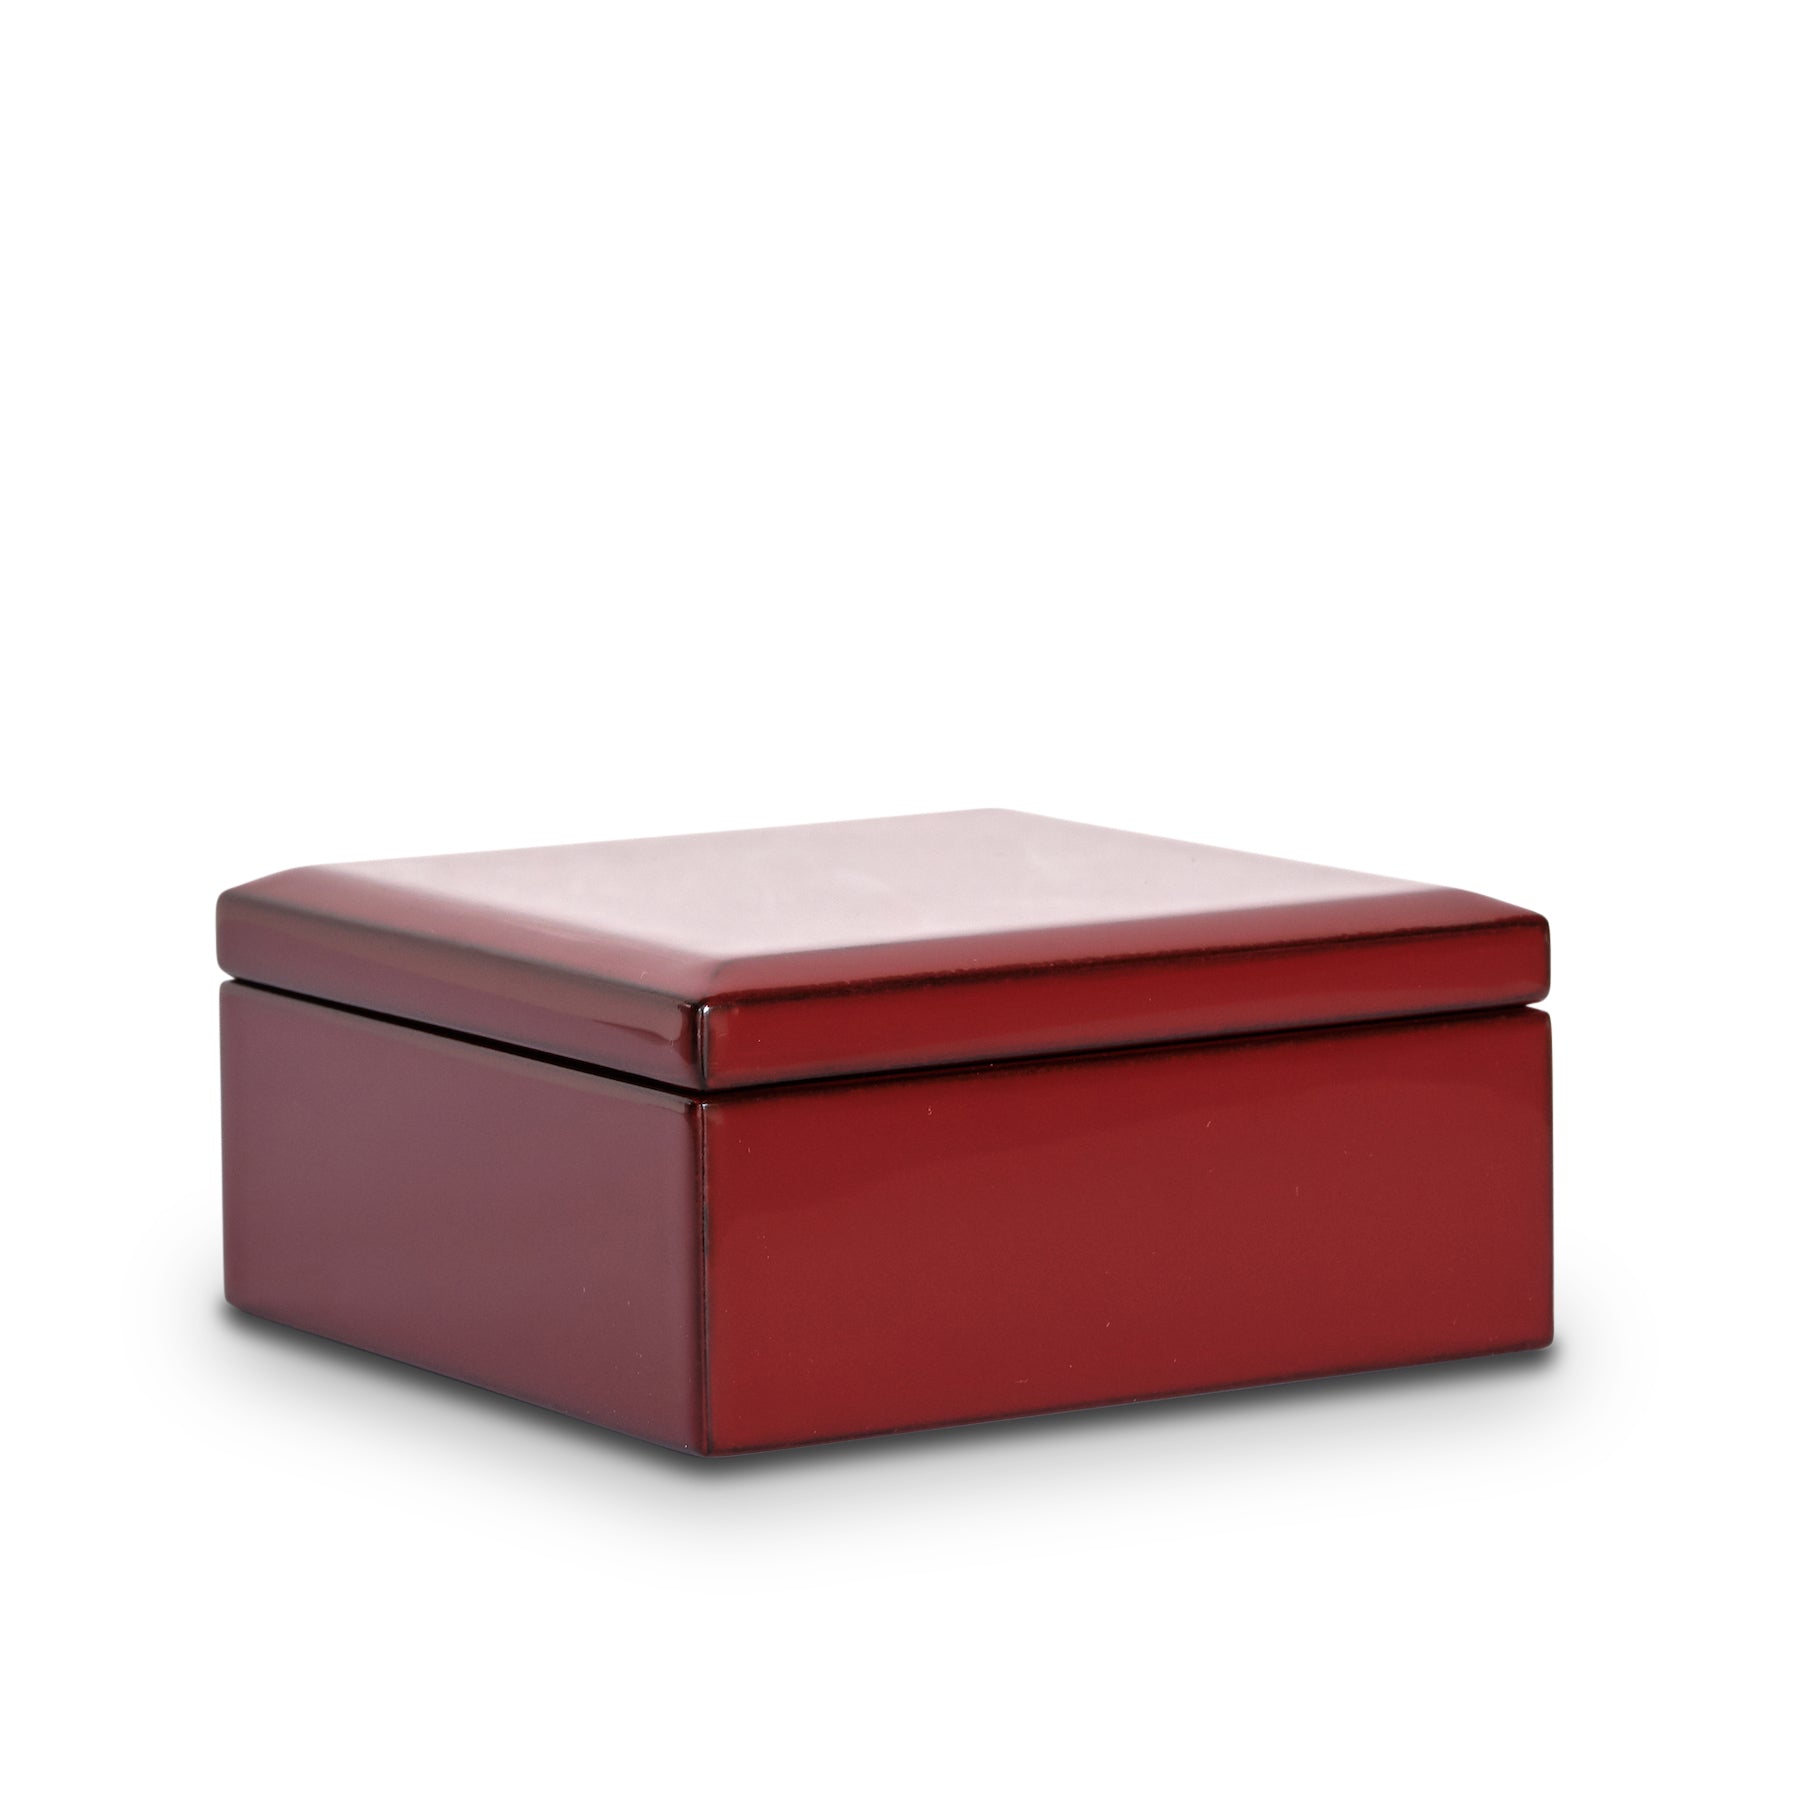 Echizen Urushi Lacquer Box (red)